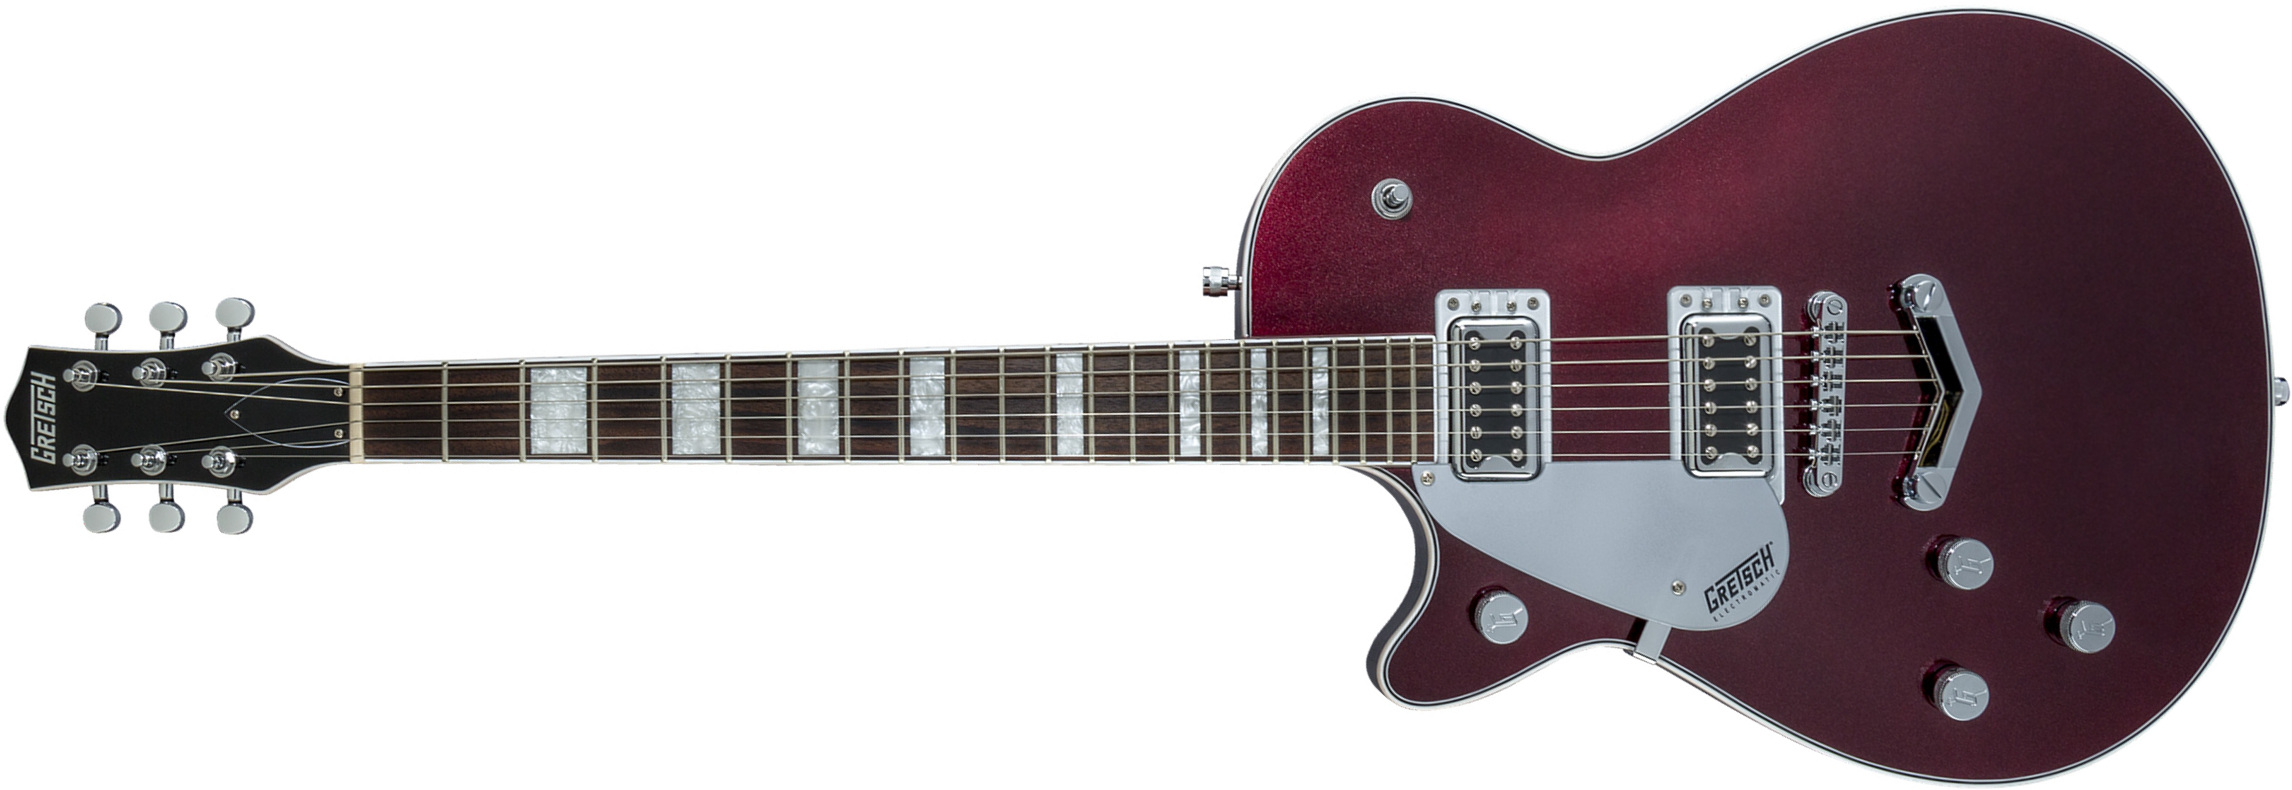 Gretsch G5220lh Jet Bt Singlecut V-stoptail Electromatic Gaucher Hh Ht Lau - Dark Cherry Metallic - Linkshandige elektrische gitaar - Main picture